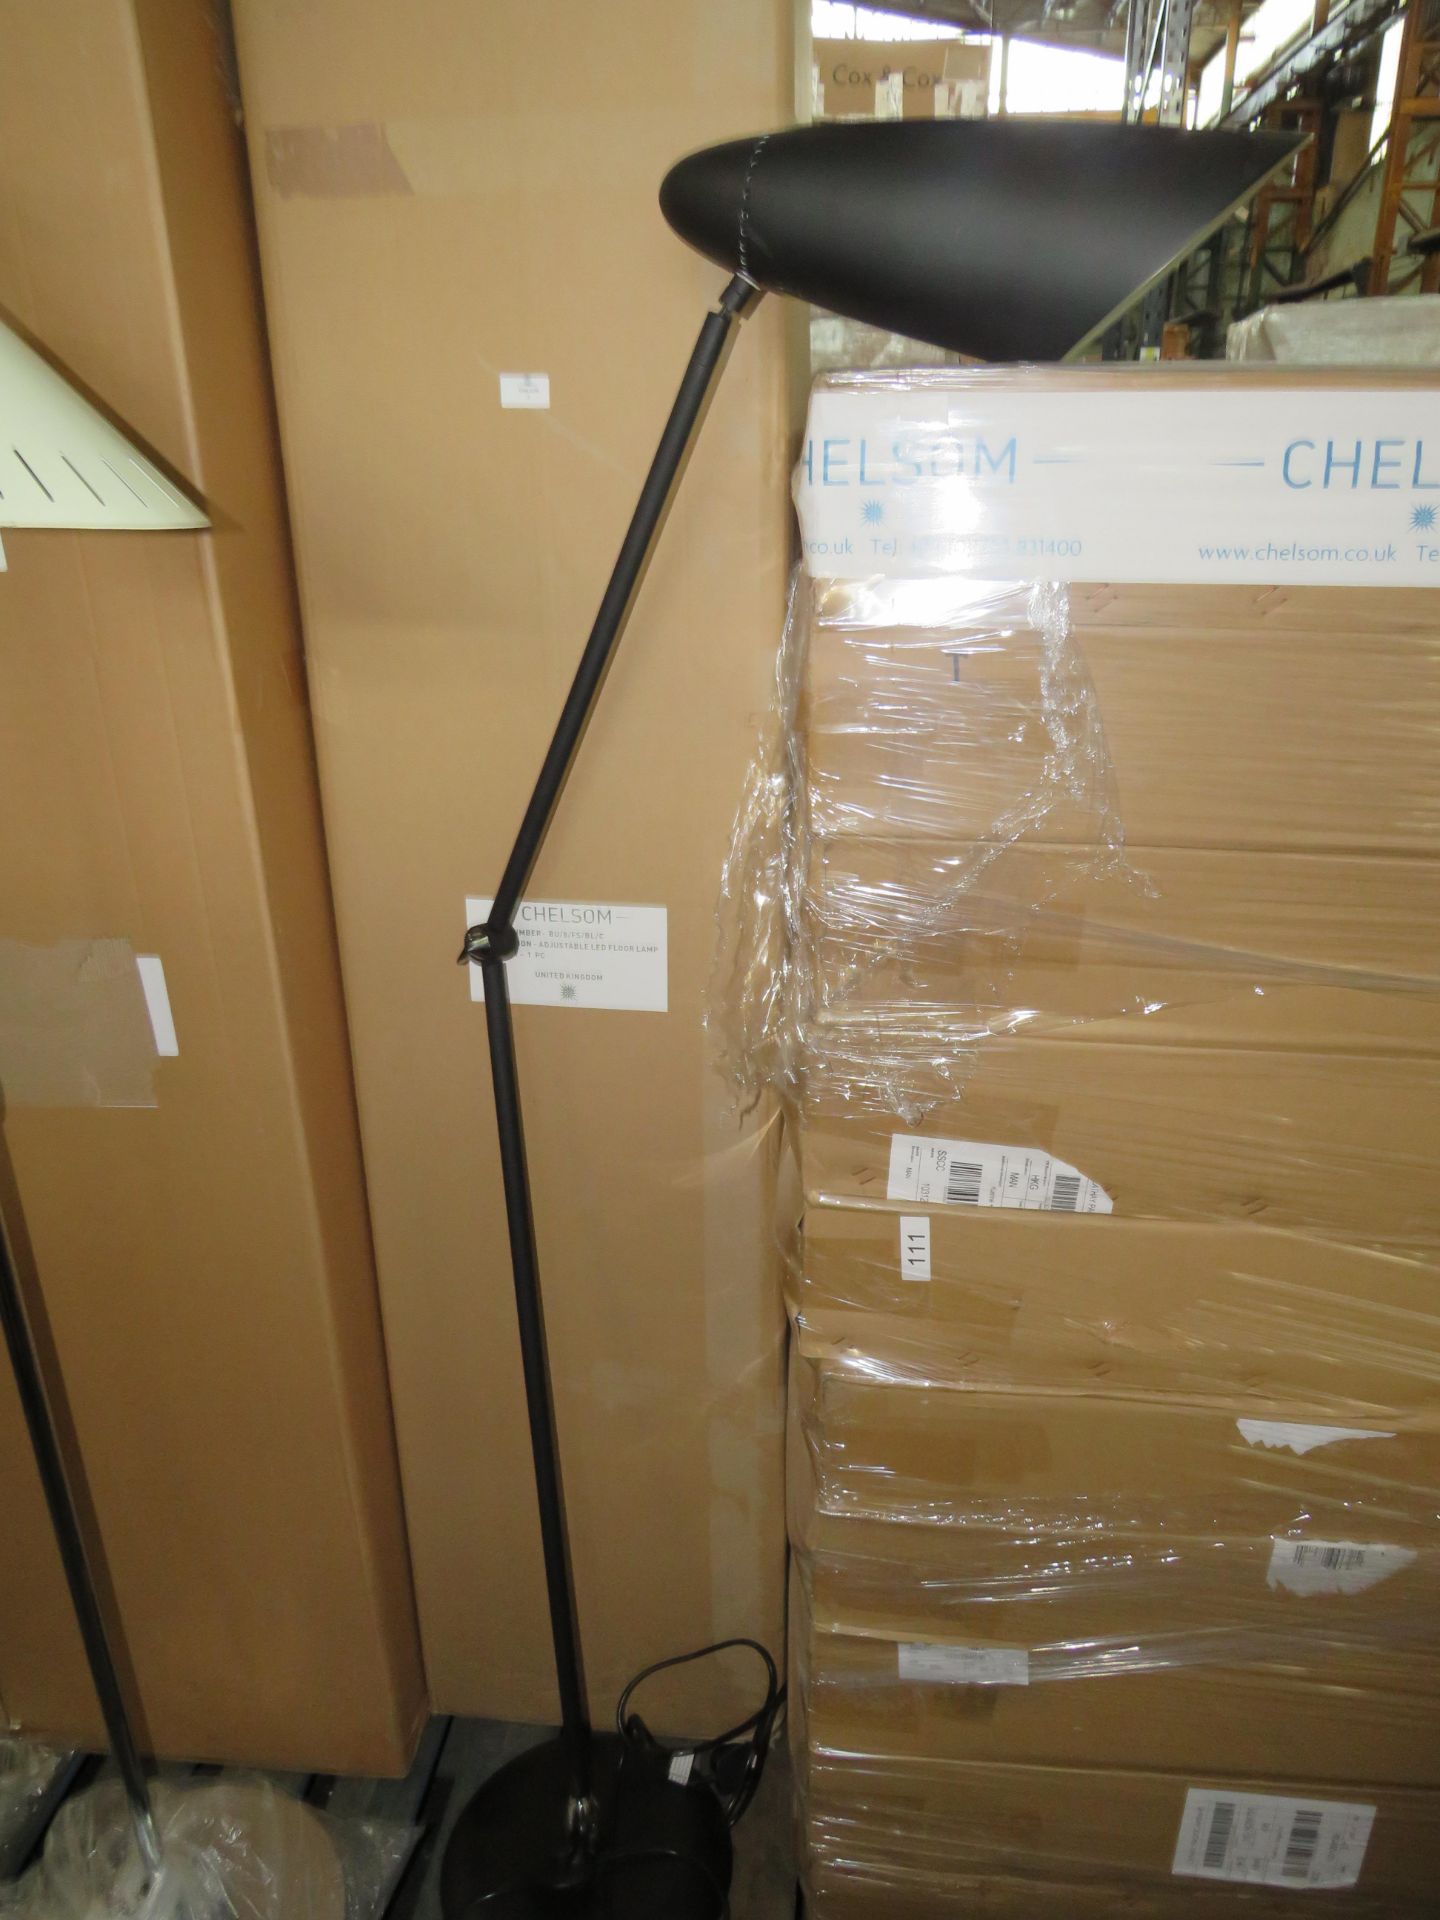 Chelsom - Adjustable LED Floor Lamp - Black / BU/8/FS/BL/C - New & Boxed.